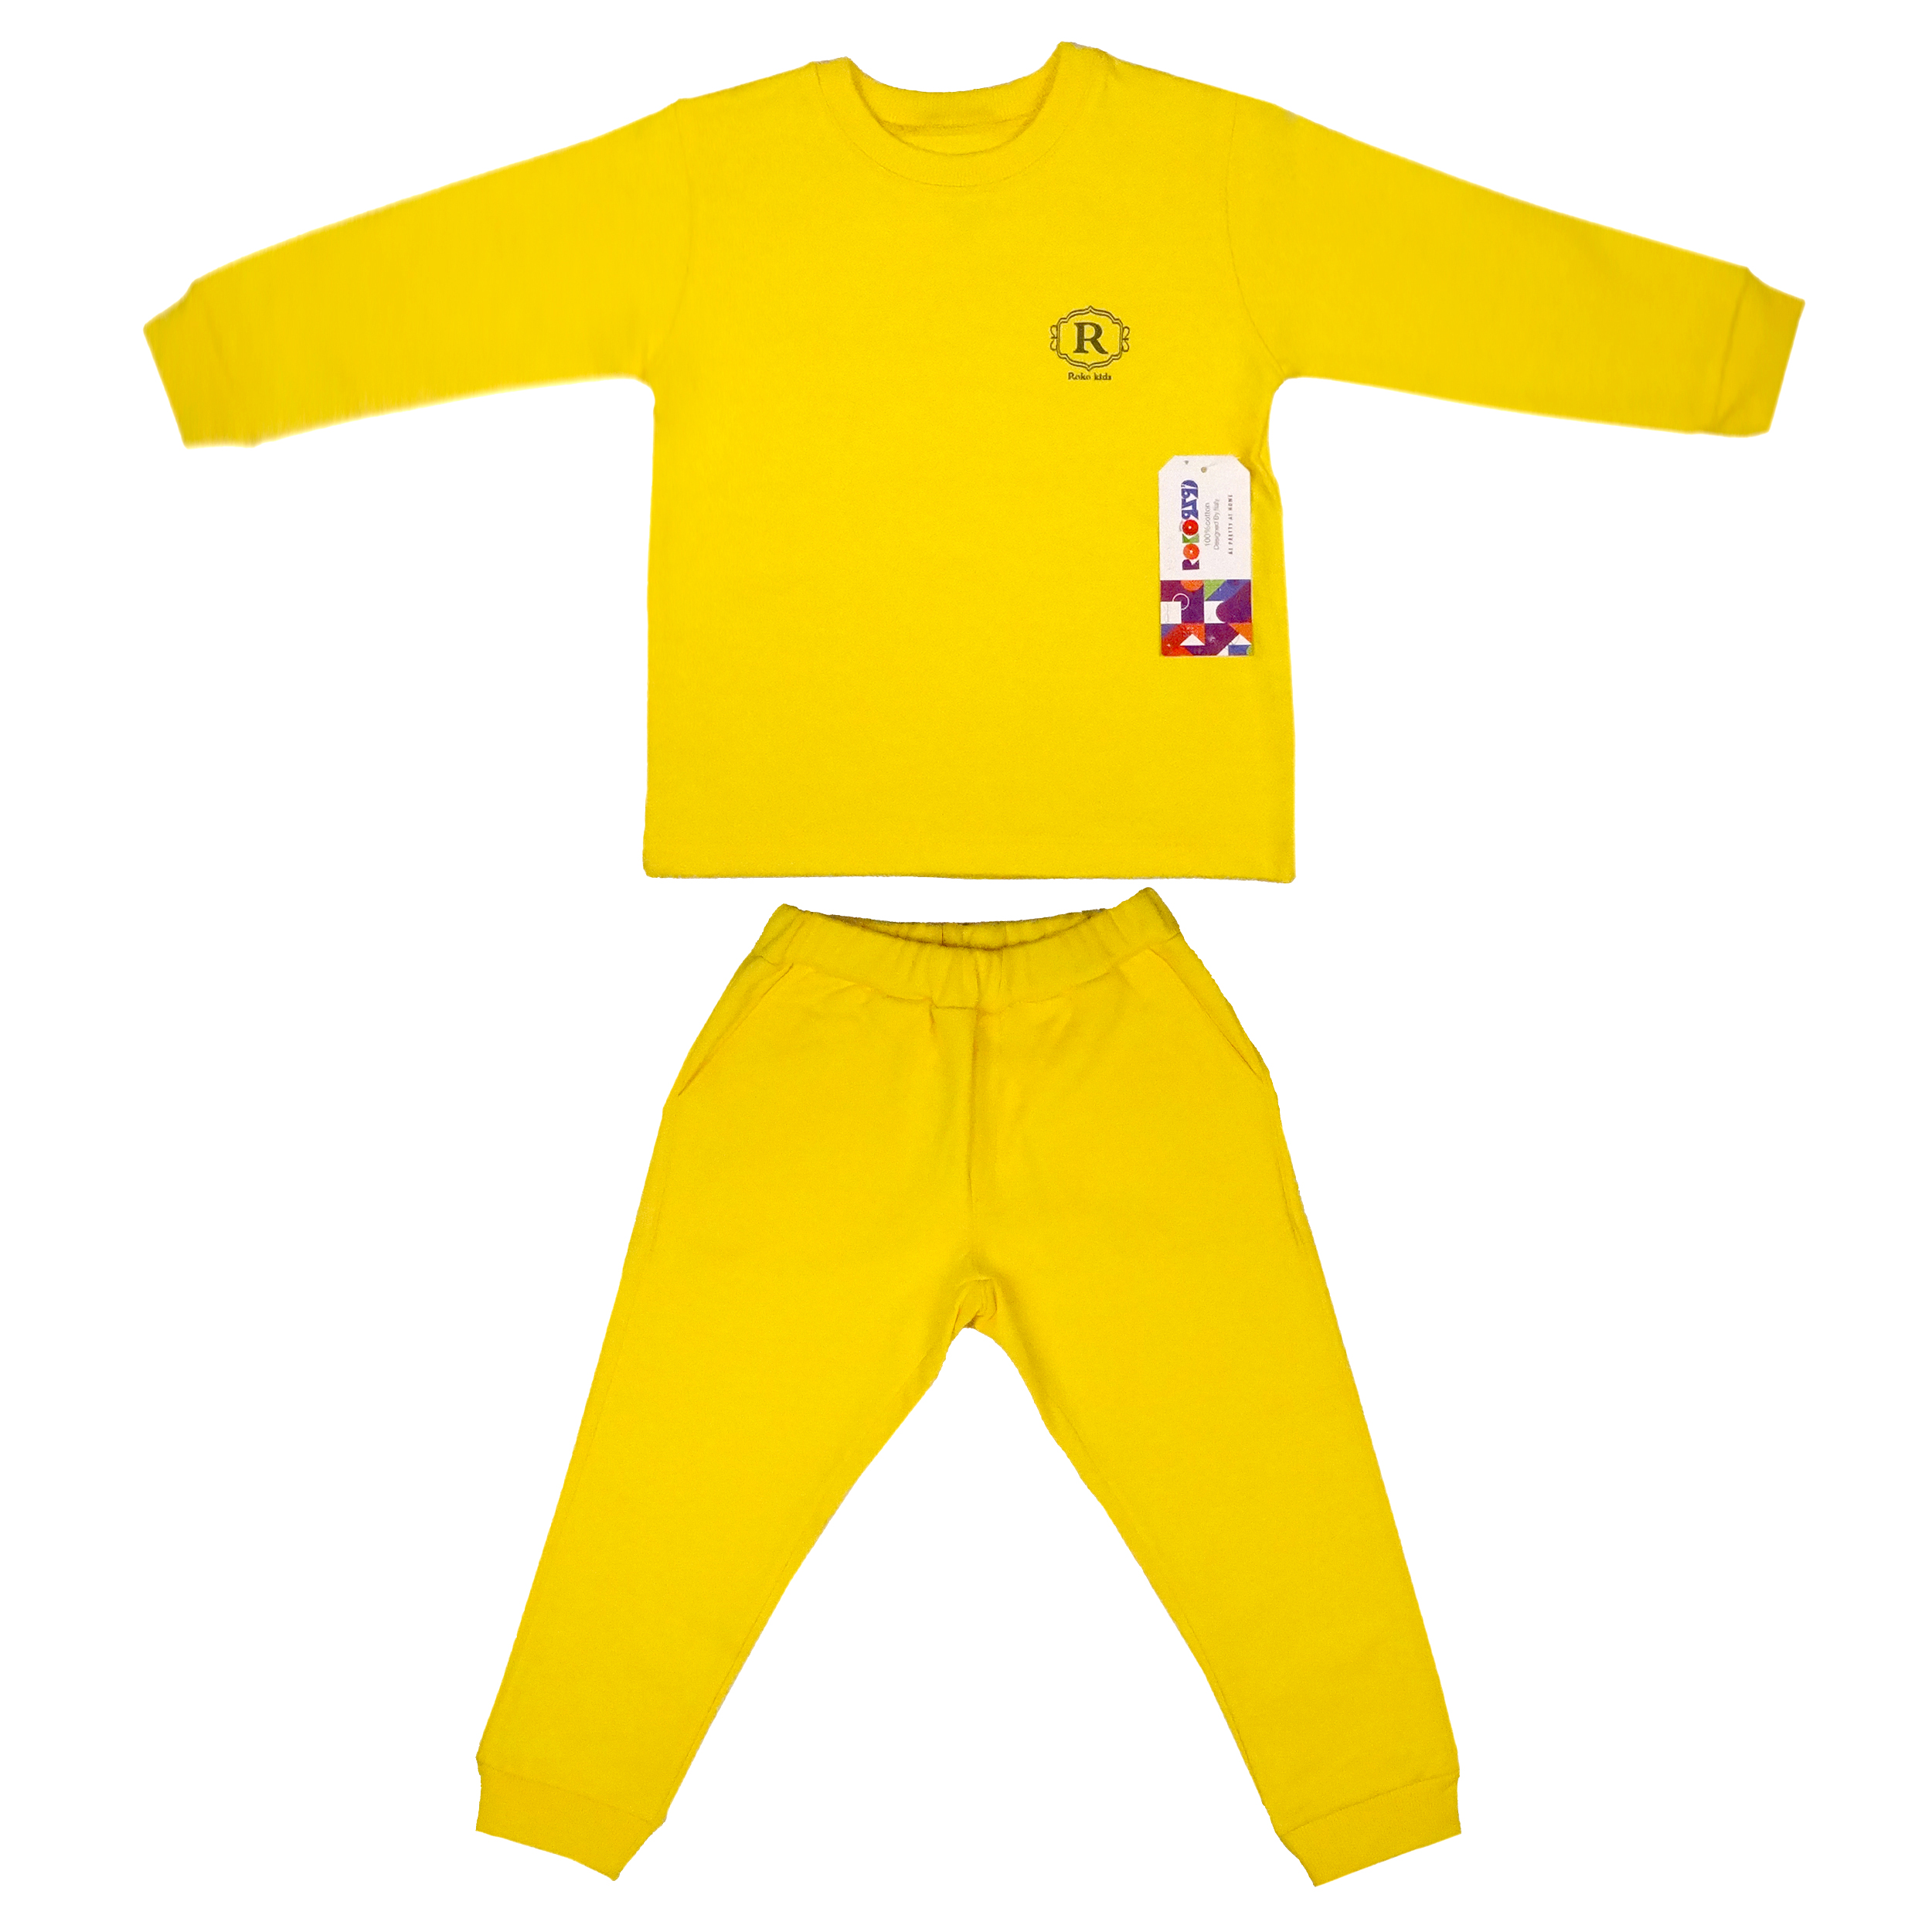 ست تیشرت و شلوار بچگانه روکو کوچولو مدل 003 رنگ زرد